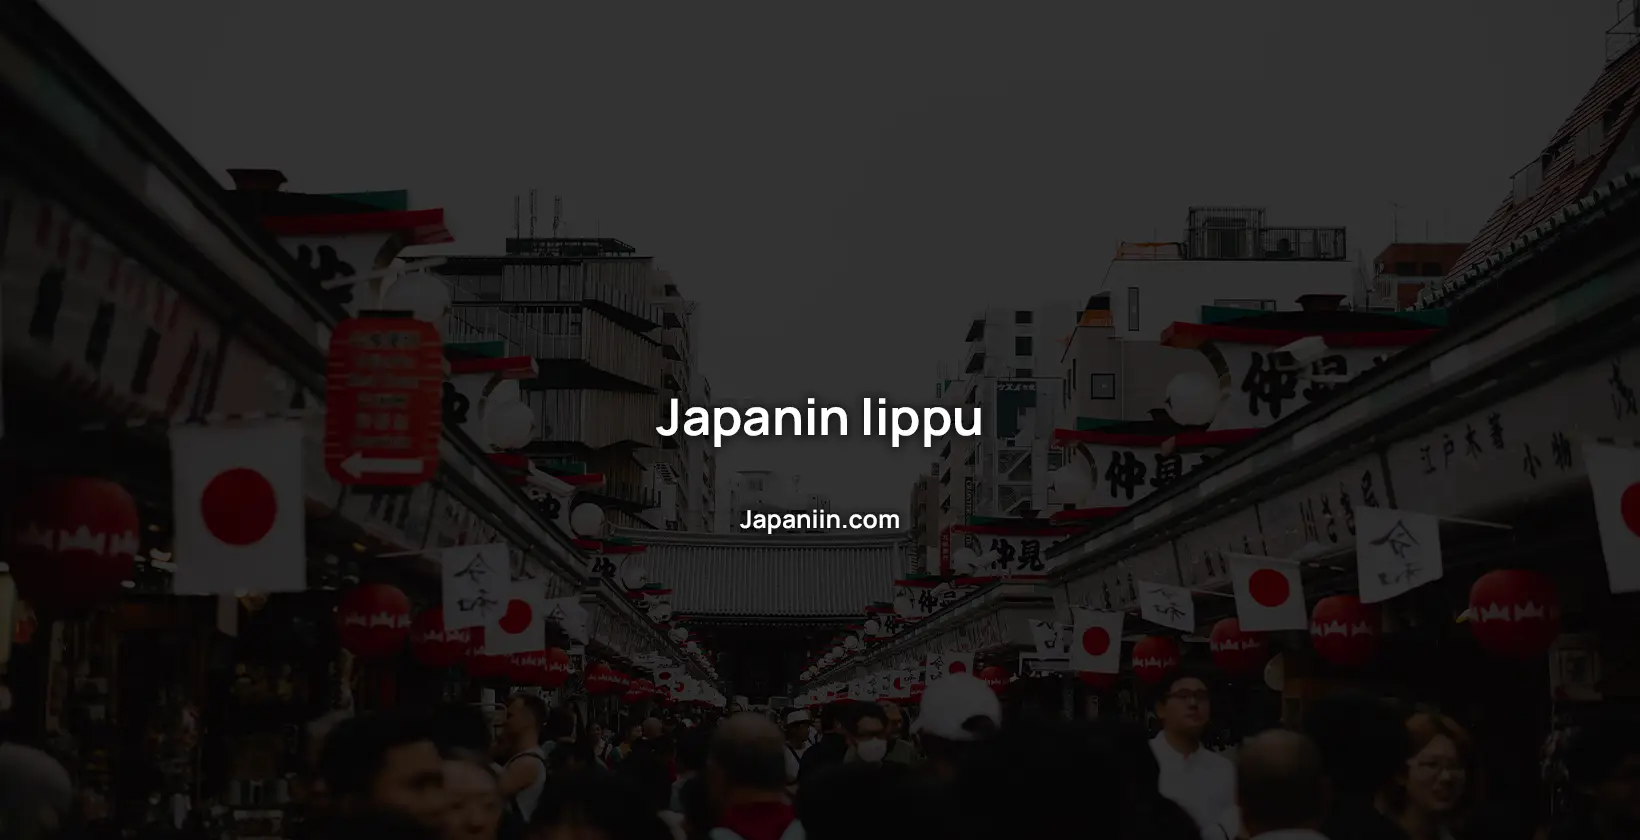 Japanin lippu on yksi maailman tunnetuimmista lipuista